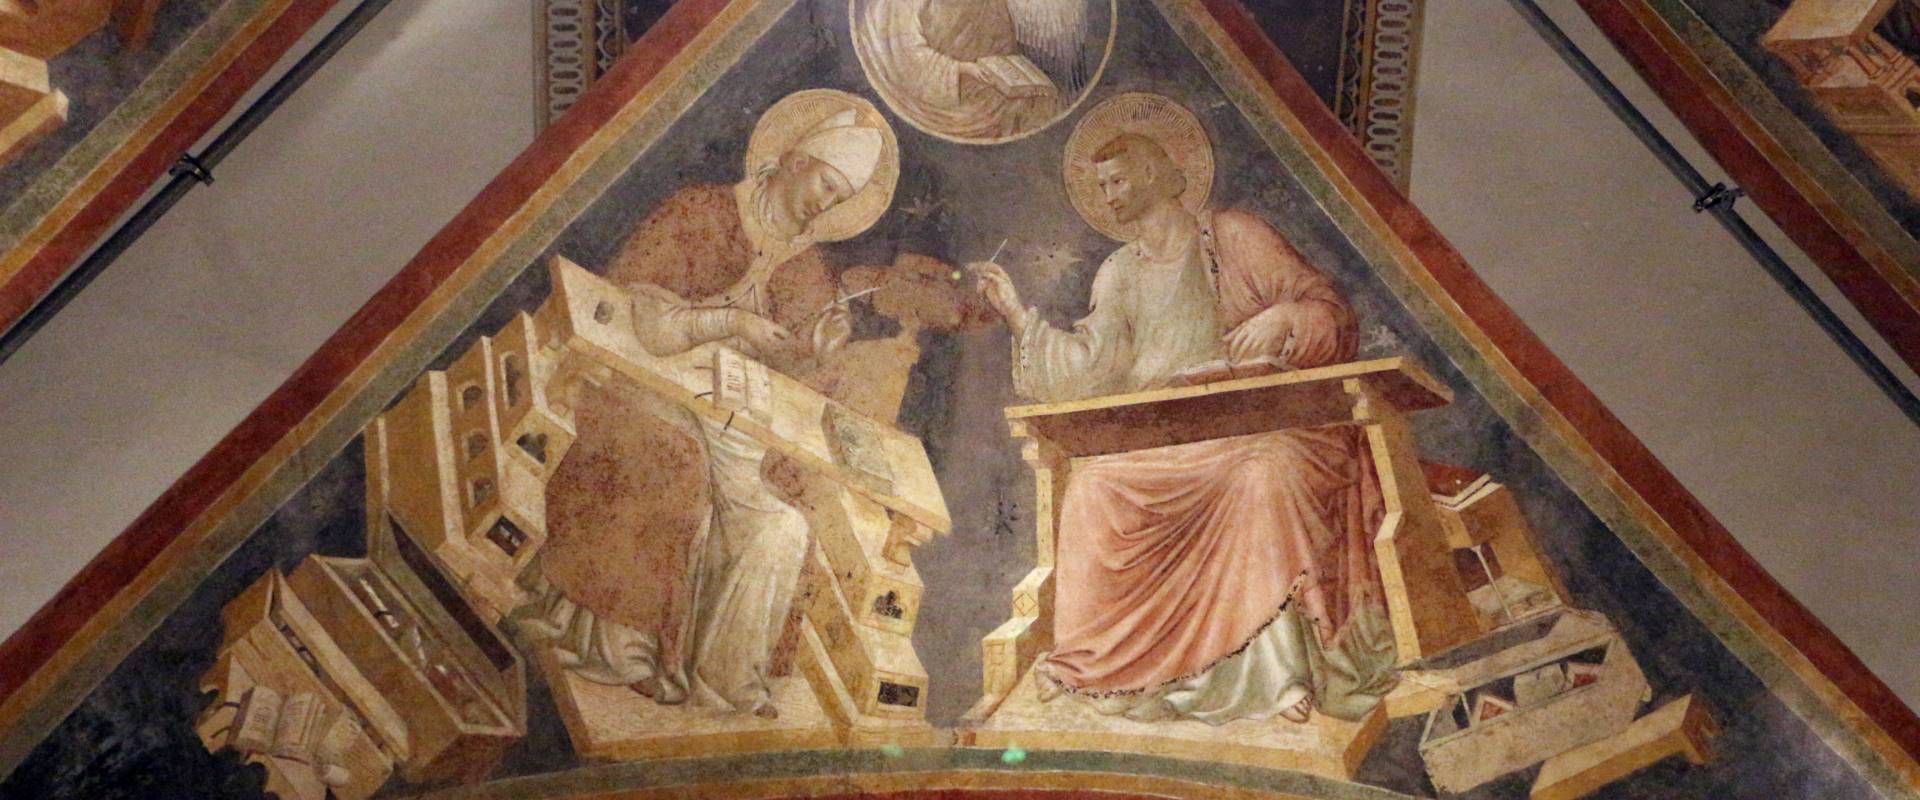 Pietro da rimini e bottega, affreschi dalla chiesa di s. chiara a ravenna, 1310-20 ca., volta con evangelisti e dottori, girolamo e matteo foto di Sailko